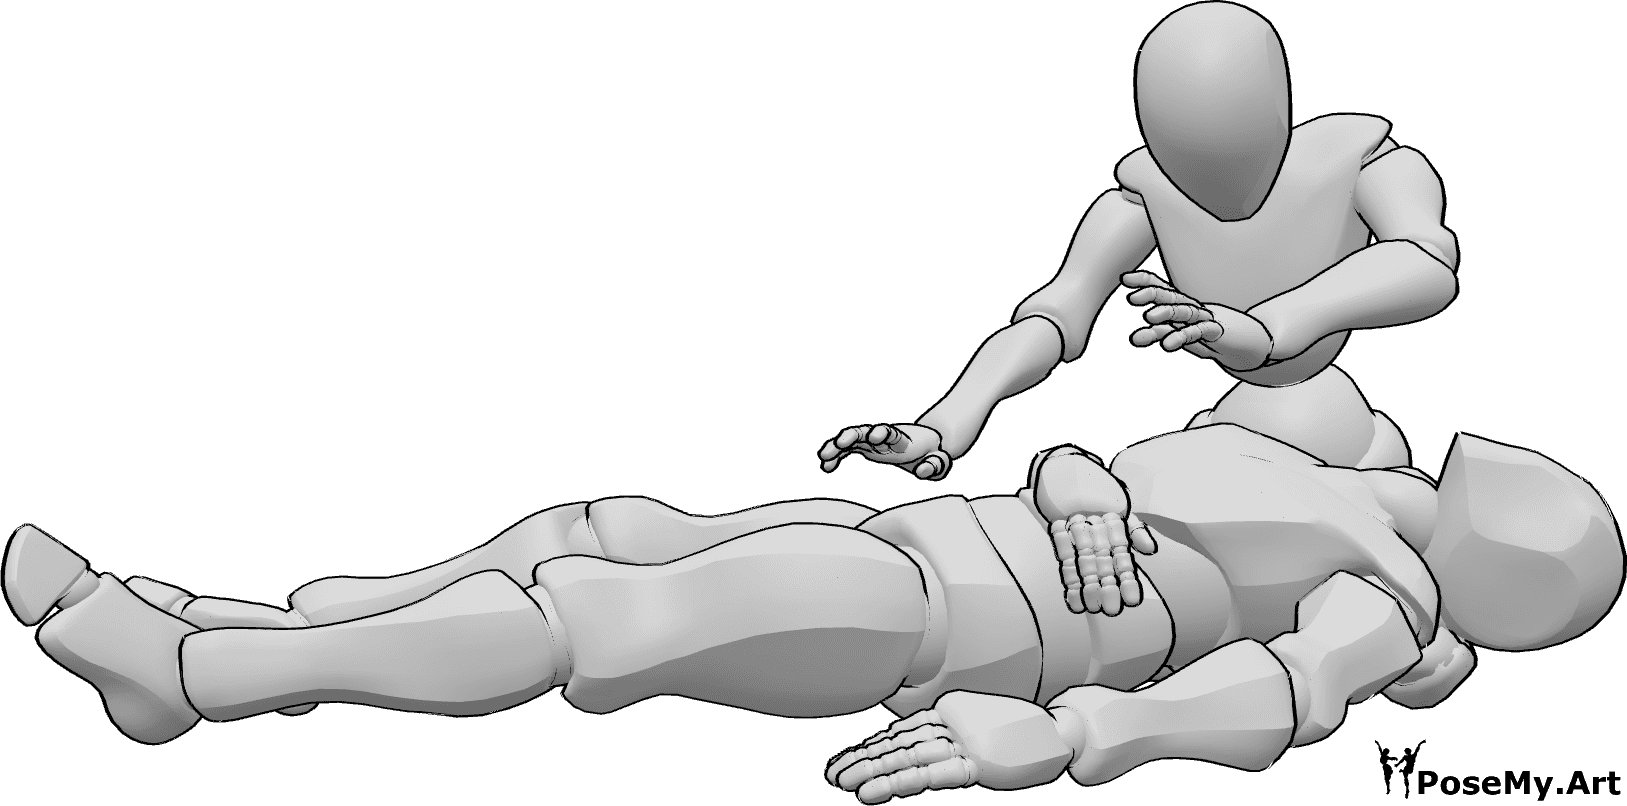 Riferimento alle pose- Posa femminile di guarigione maschile - La donna guarisce l'uomo, che giace ferito sulle sue ginocchia.